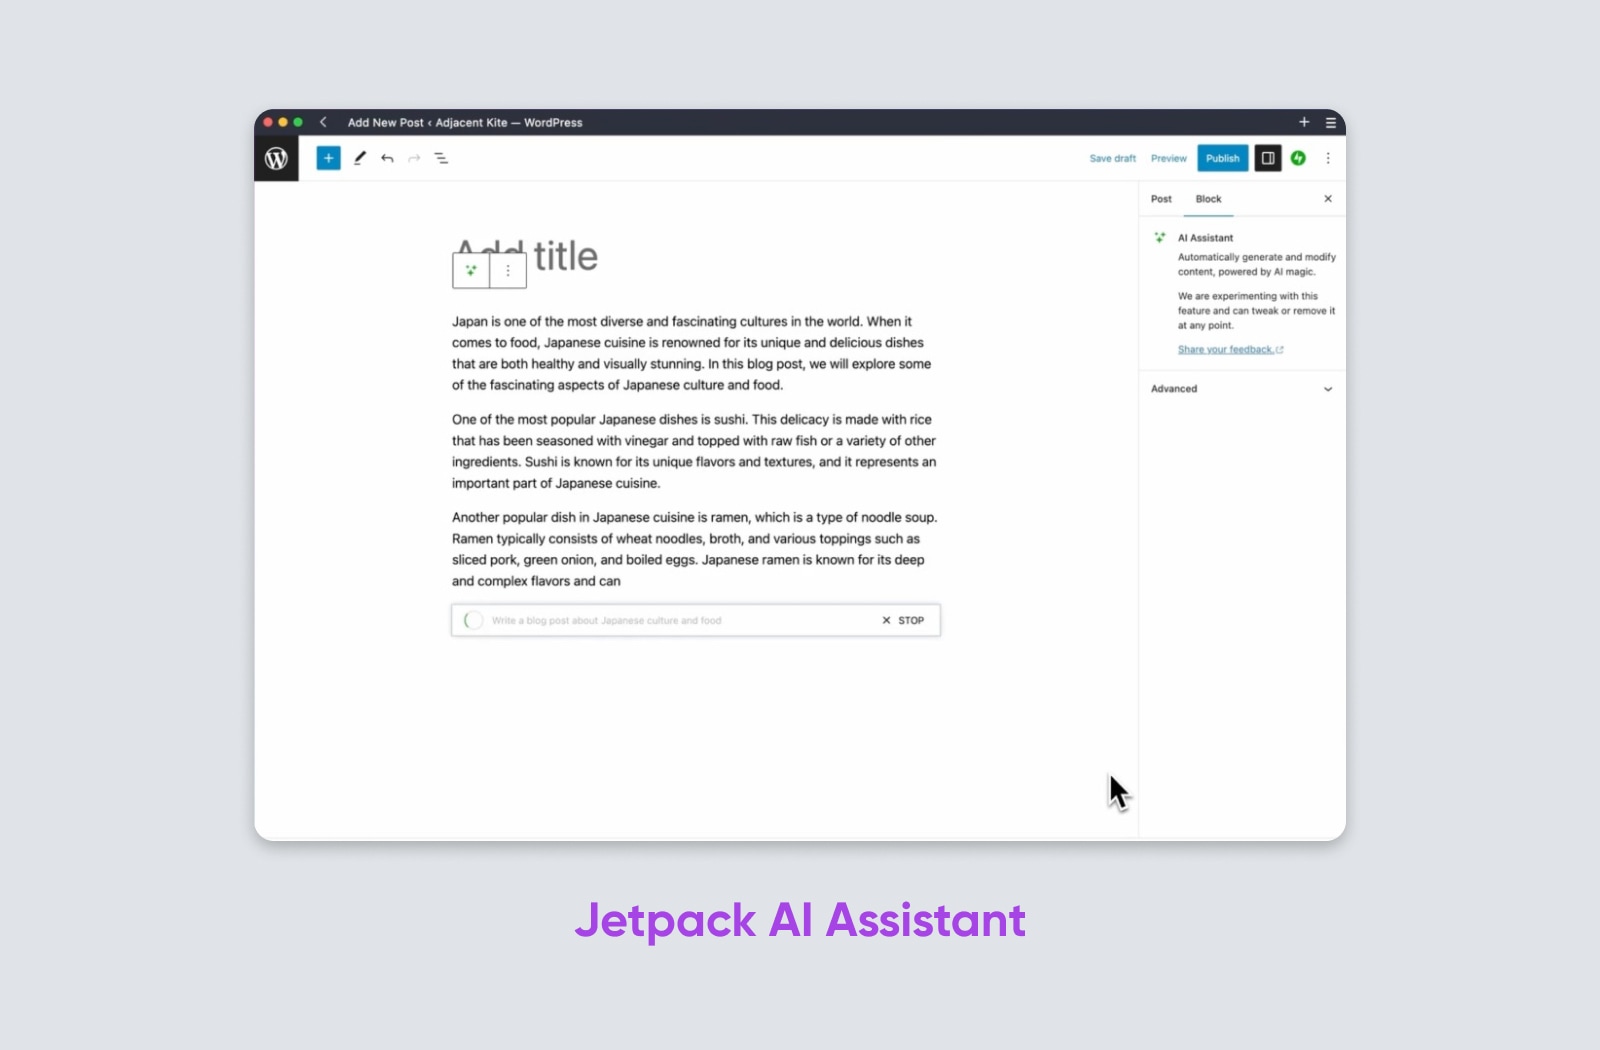 Jetpack AI Assistant